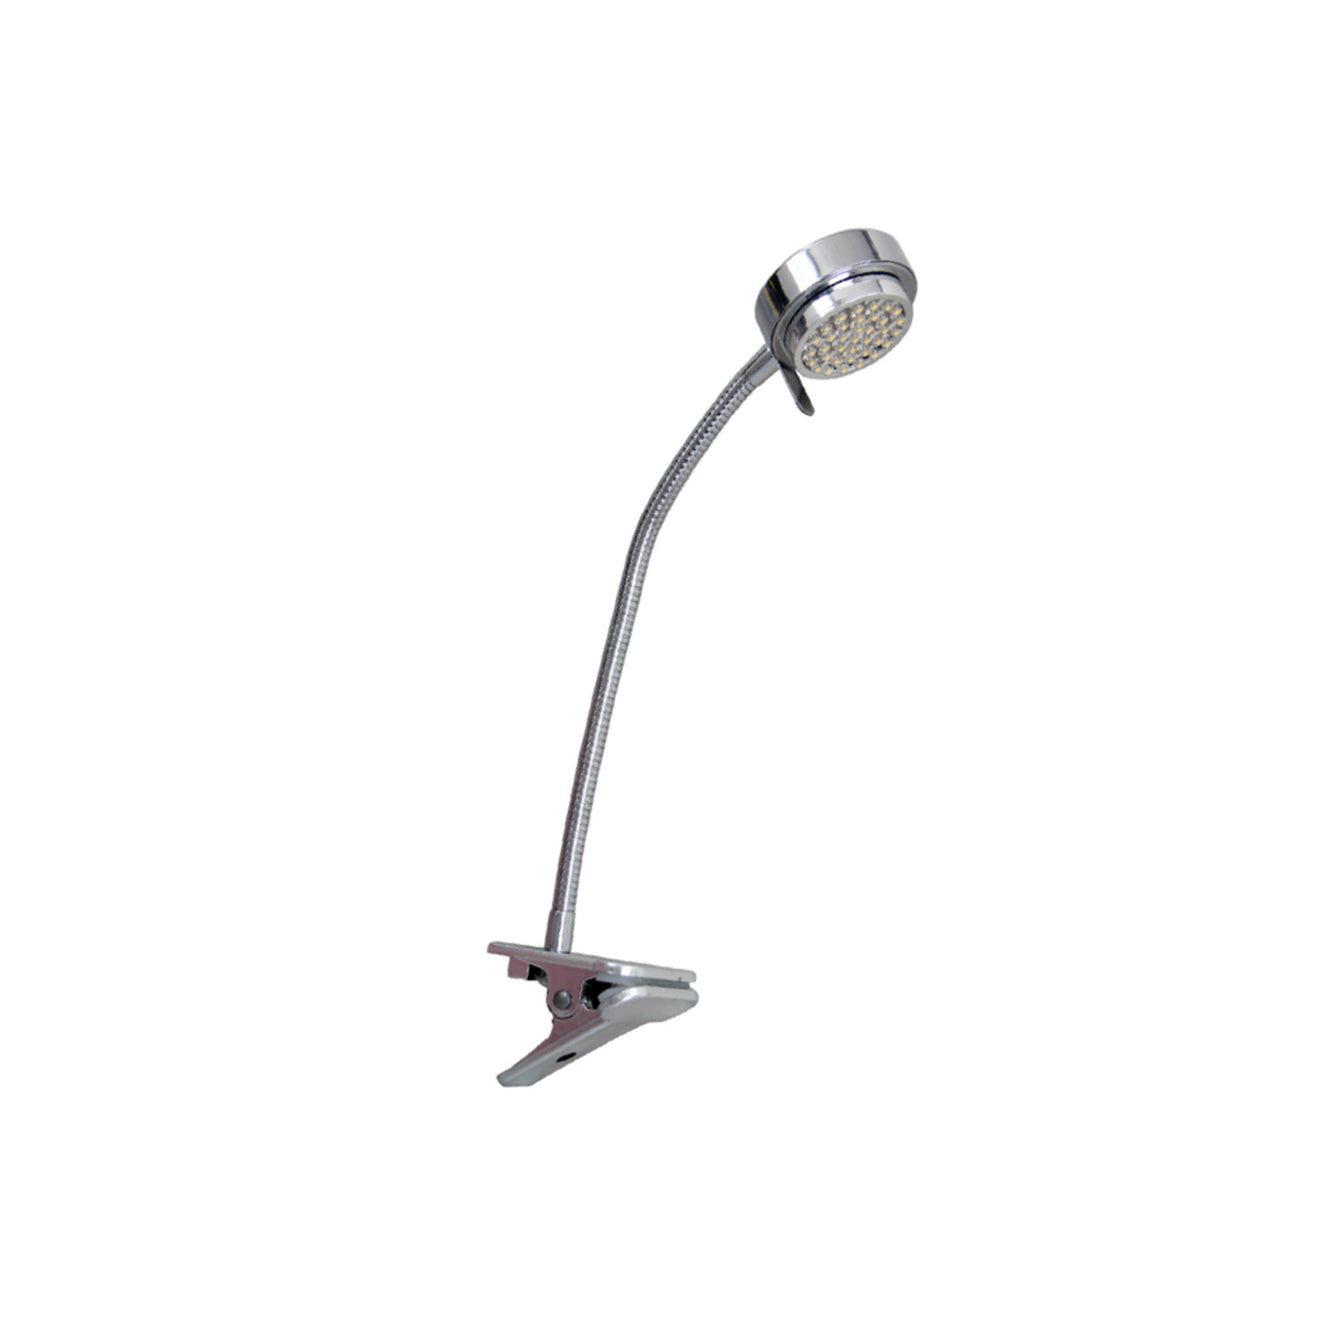 Redbridge Table and Clip-on Lamp LED Light - Buy It Better Clip-on Lamp